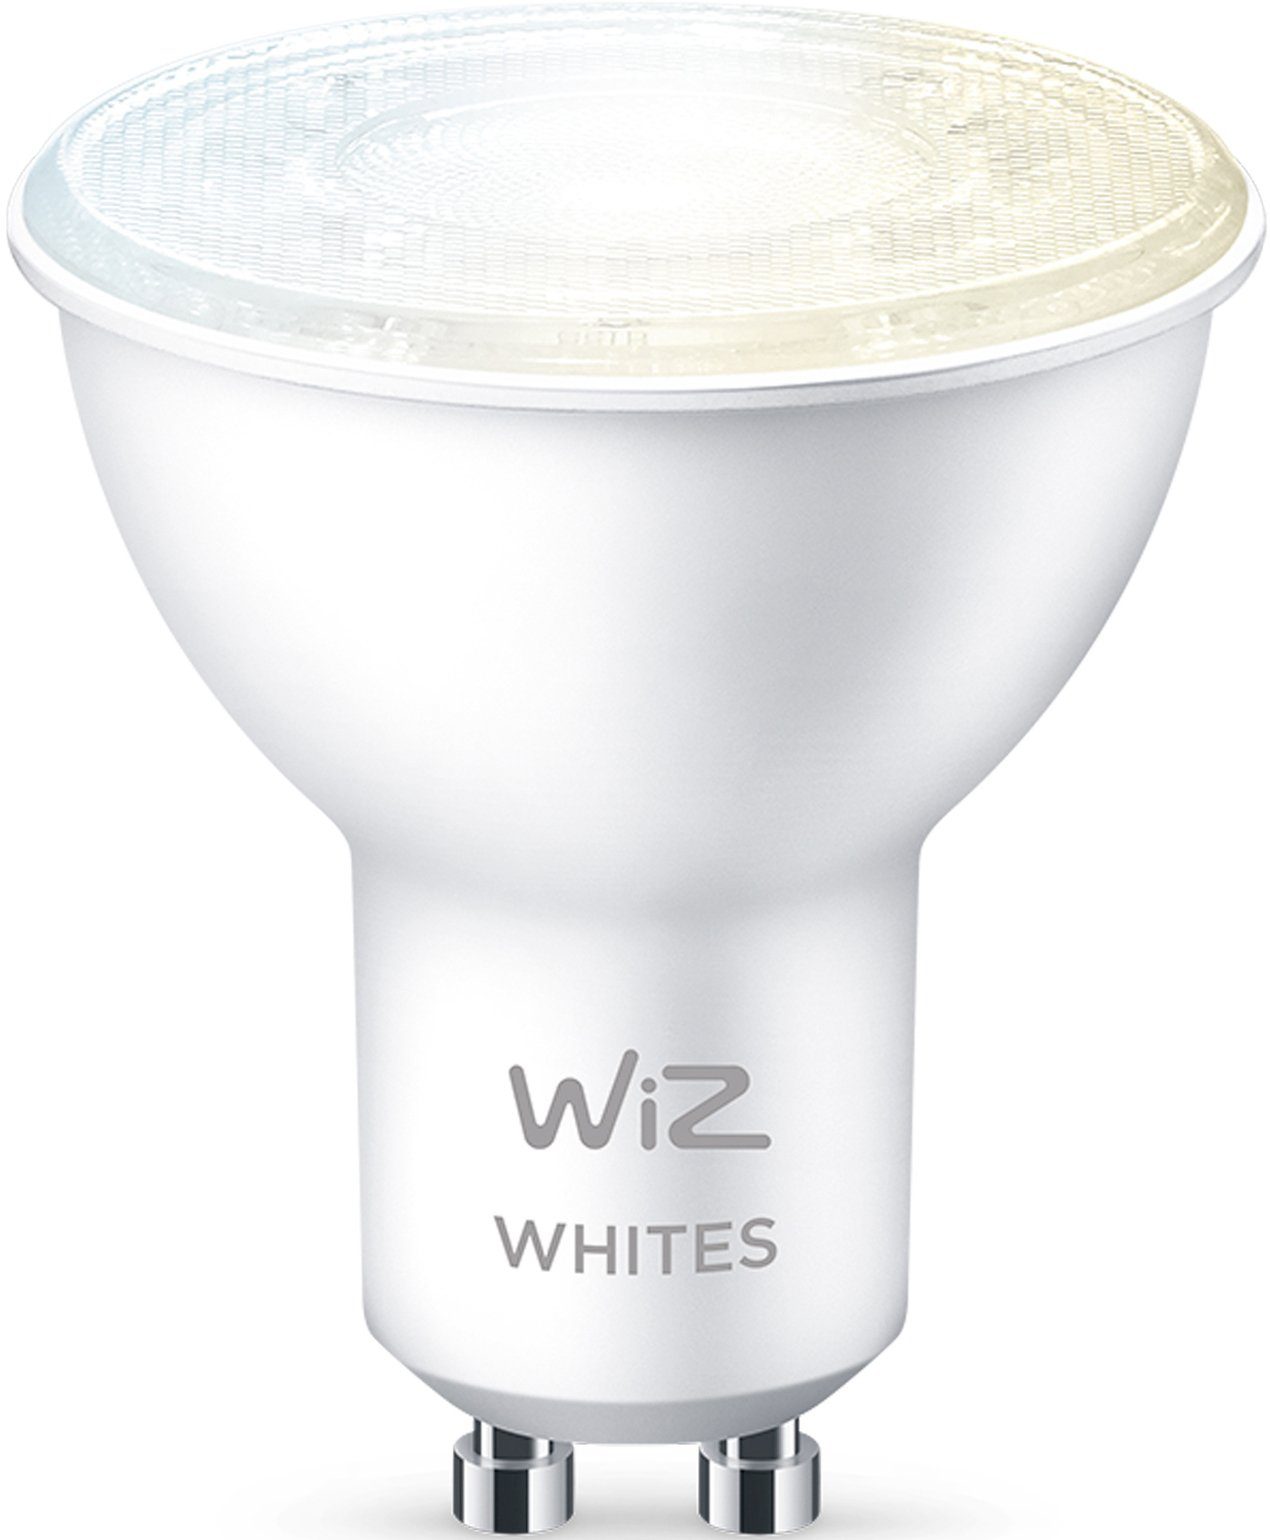 Kreieren mit 50W St., LED-Leuchtmittel Wiz smarte Tunable Spot Tunable Warmweiß, Beleuchtung White GU10, White GU10 matt 1 Sie Einzelpack, Lampen WiZ LED